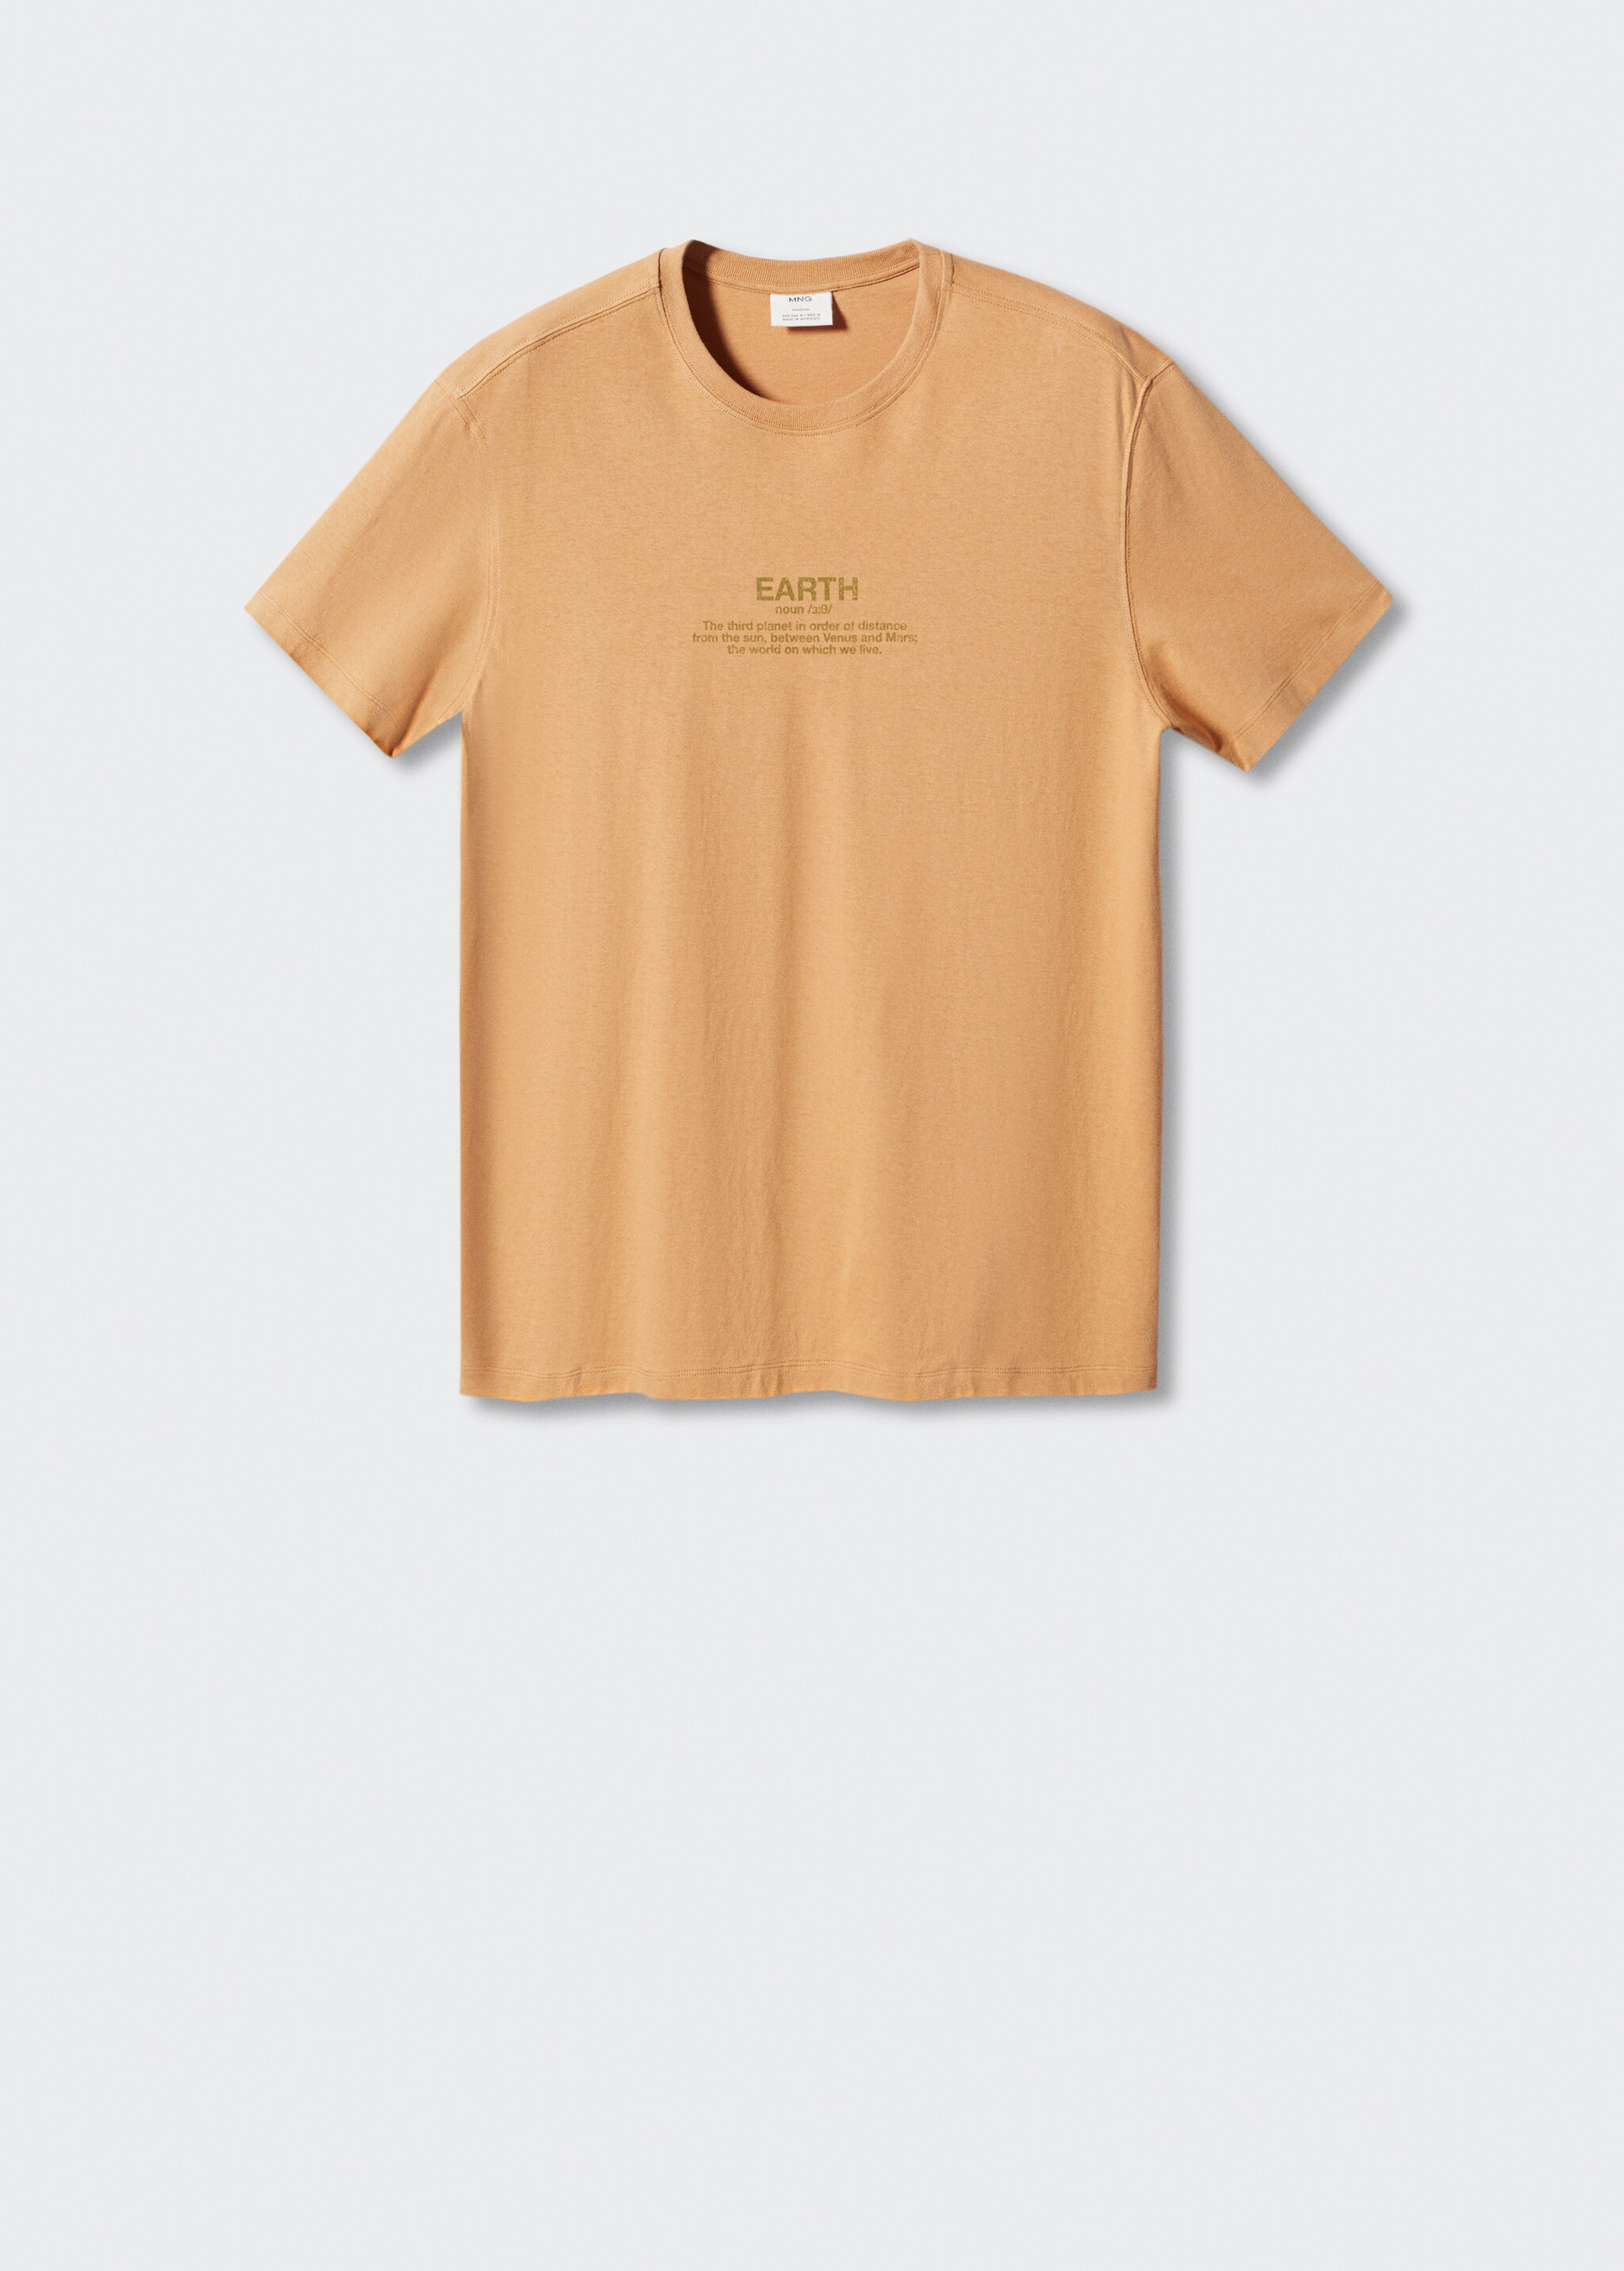 Camiseta 100% algodón relaxed fit - Artículo sin modelo